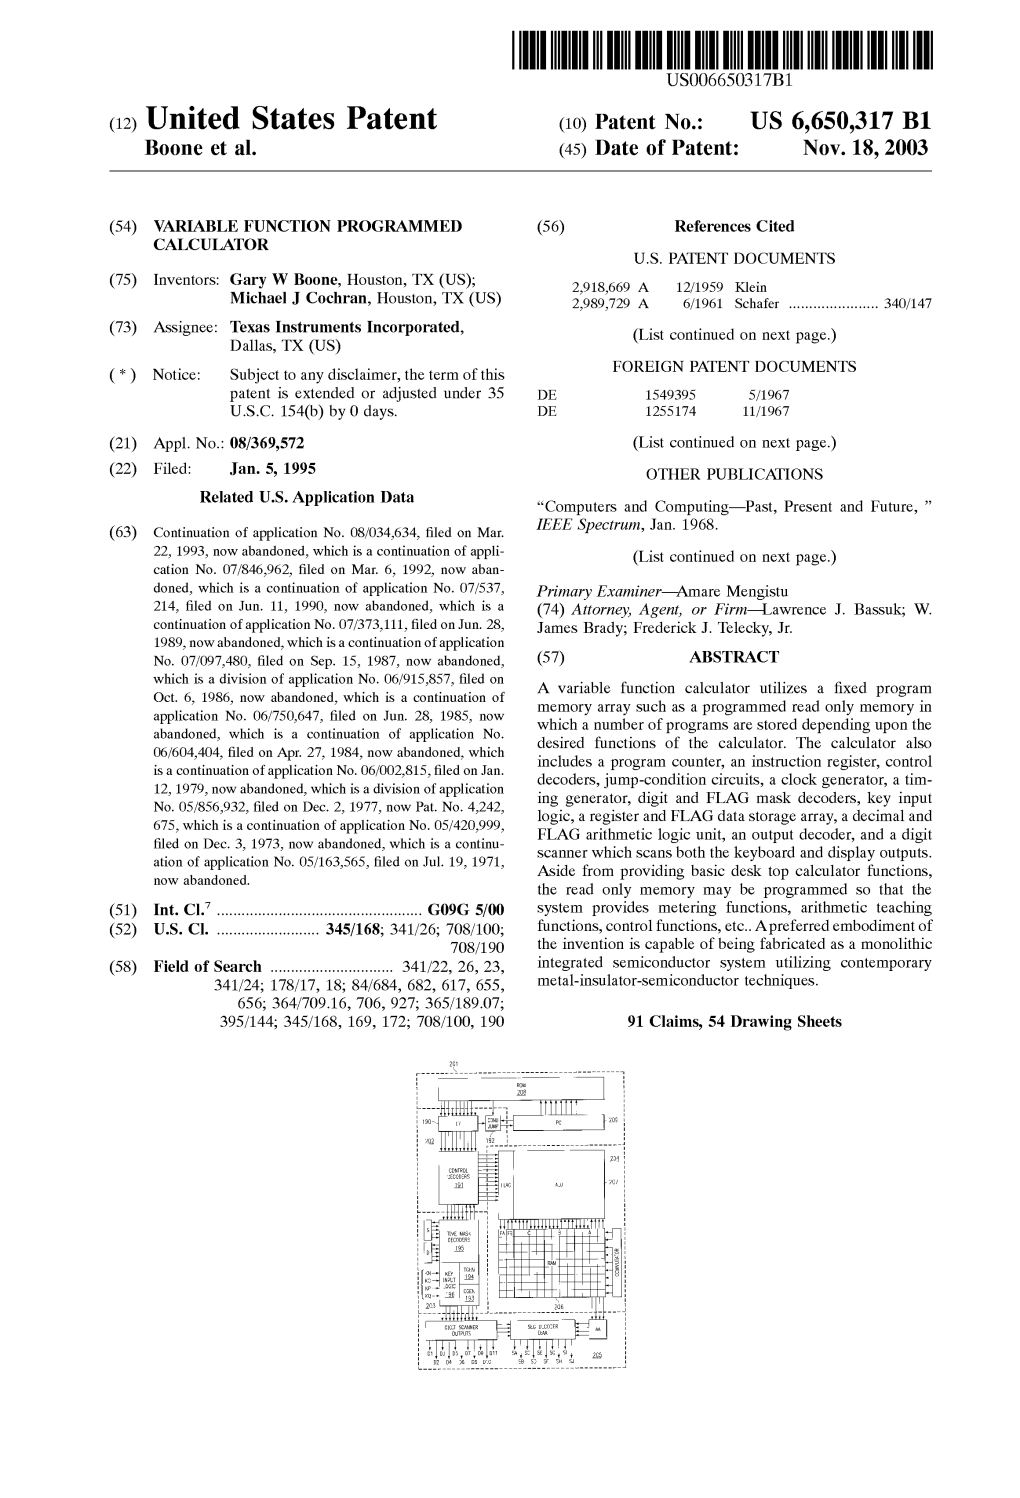 (12) United States Patent (10) Patent N0.: US 6,650,317 B1 Boone Et Al